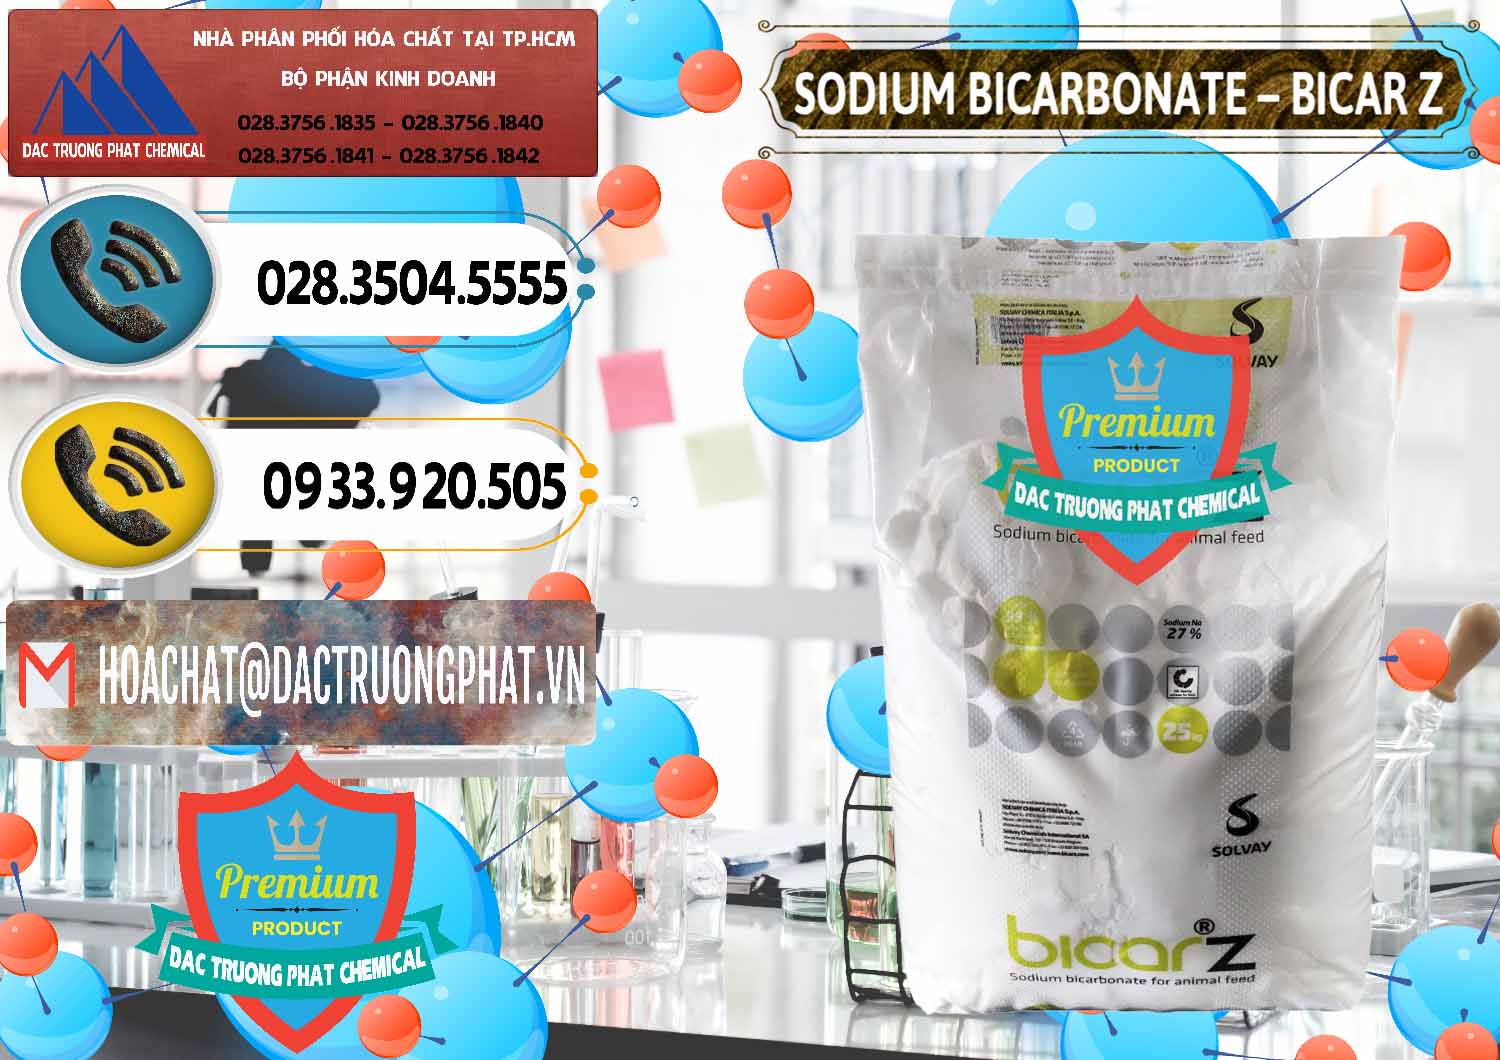 Cty chuyên kinh doanh & bán Sodium Bicarbonate – NaHCO3 Bicar Z Ý Italy Solvay - 0139 - Công ty phân phối _ cung cấp hóa chất tại TP.HCM - hoachatdetnhuom.vn